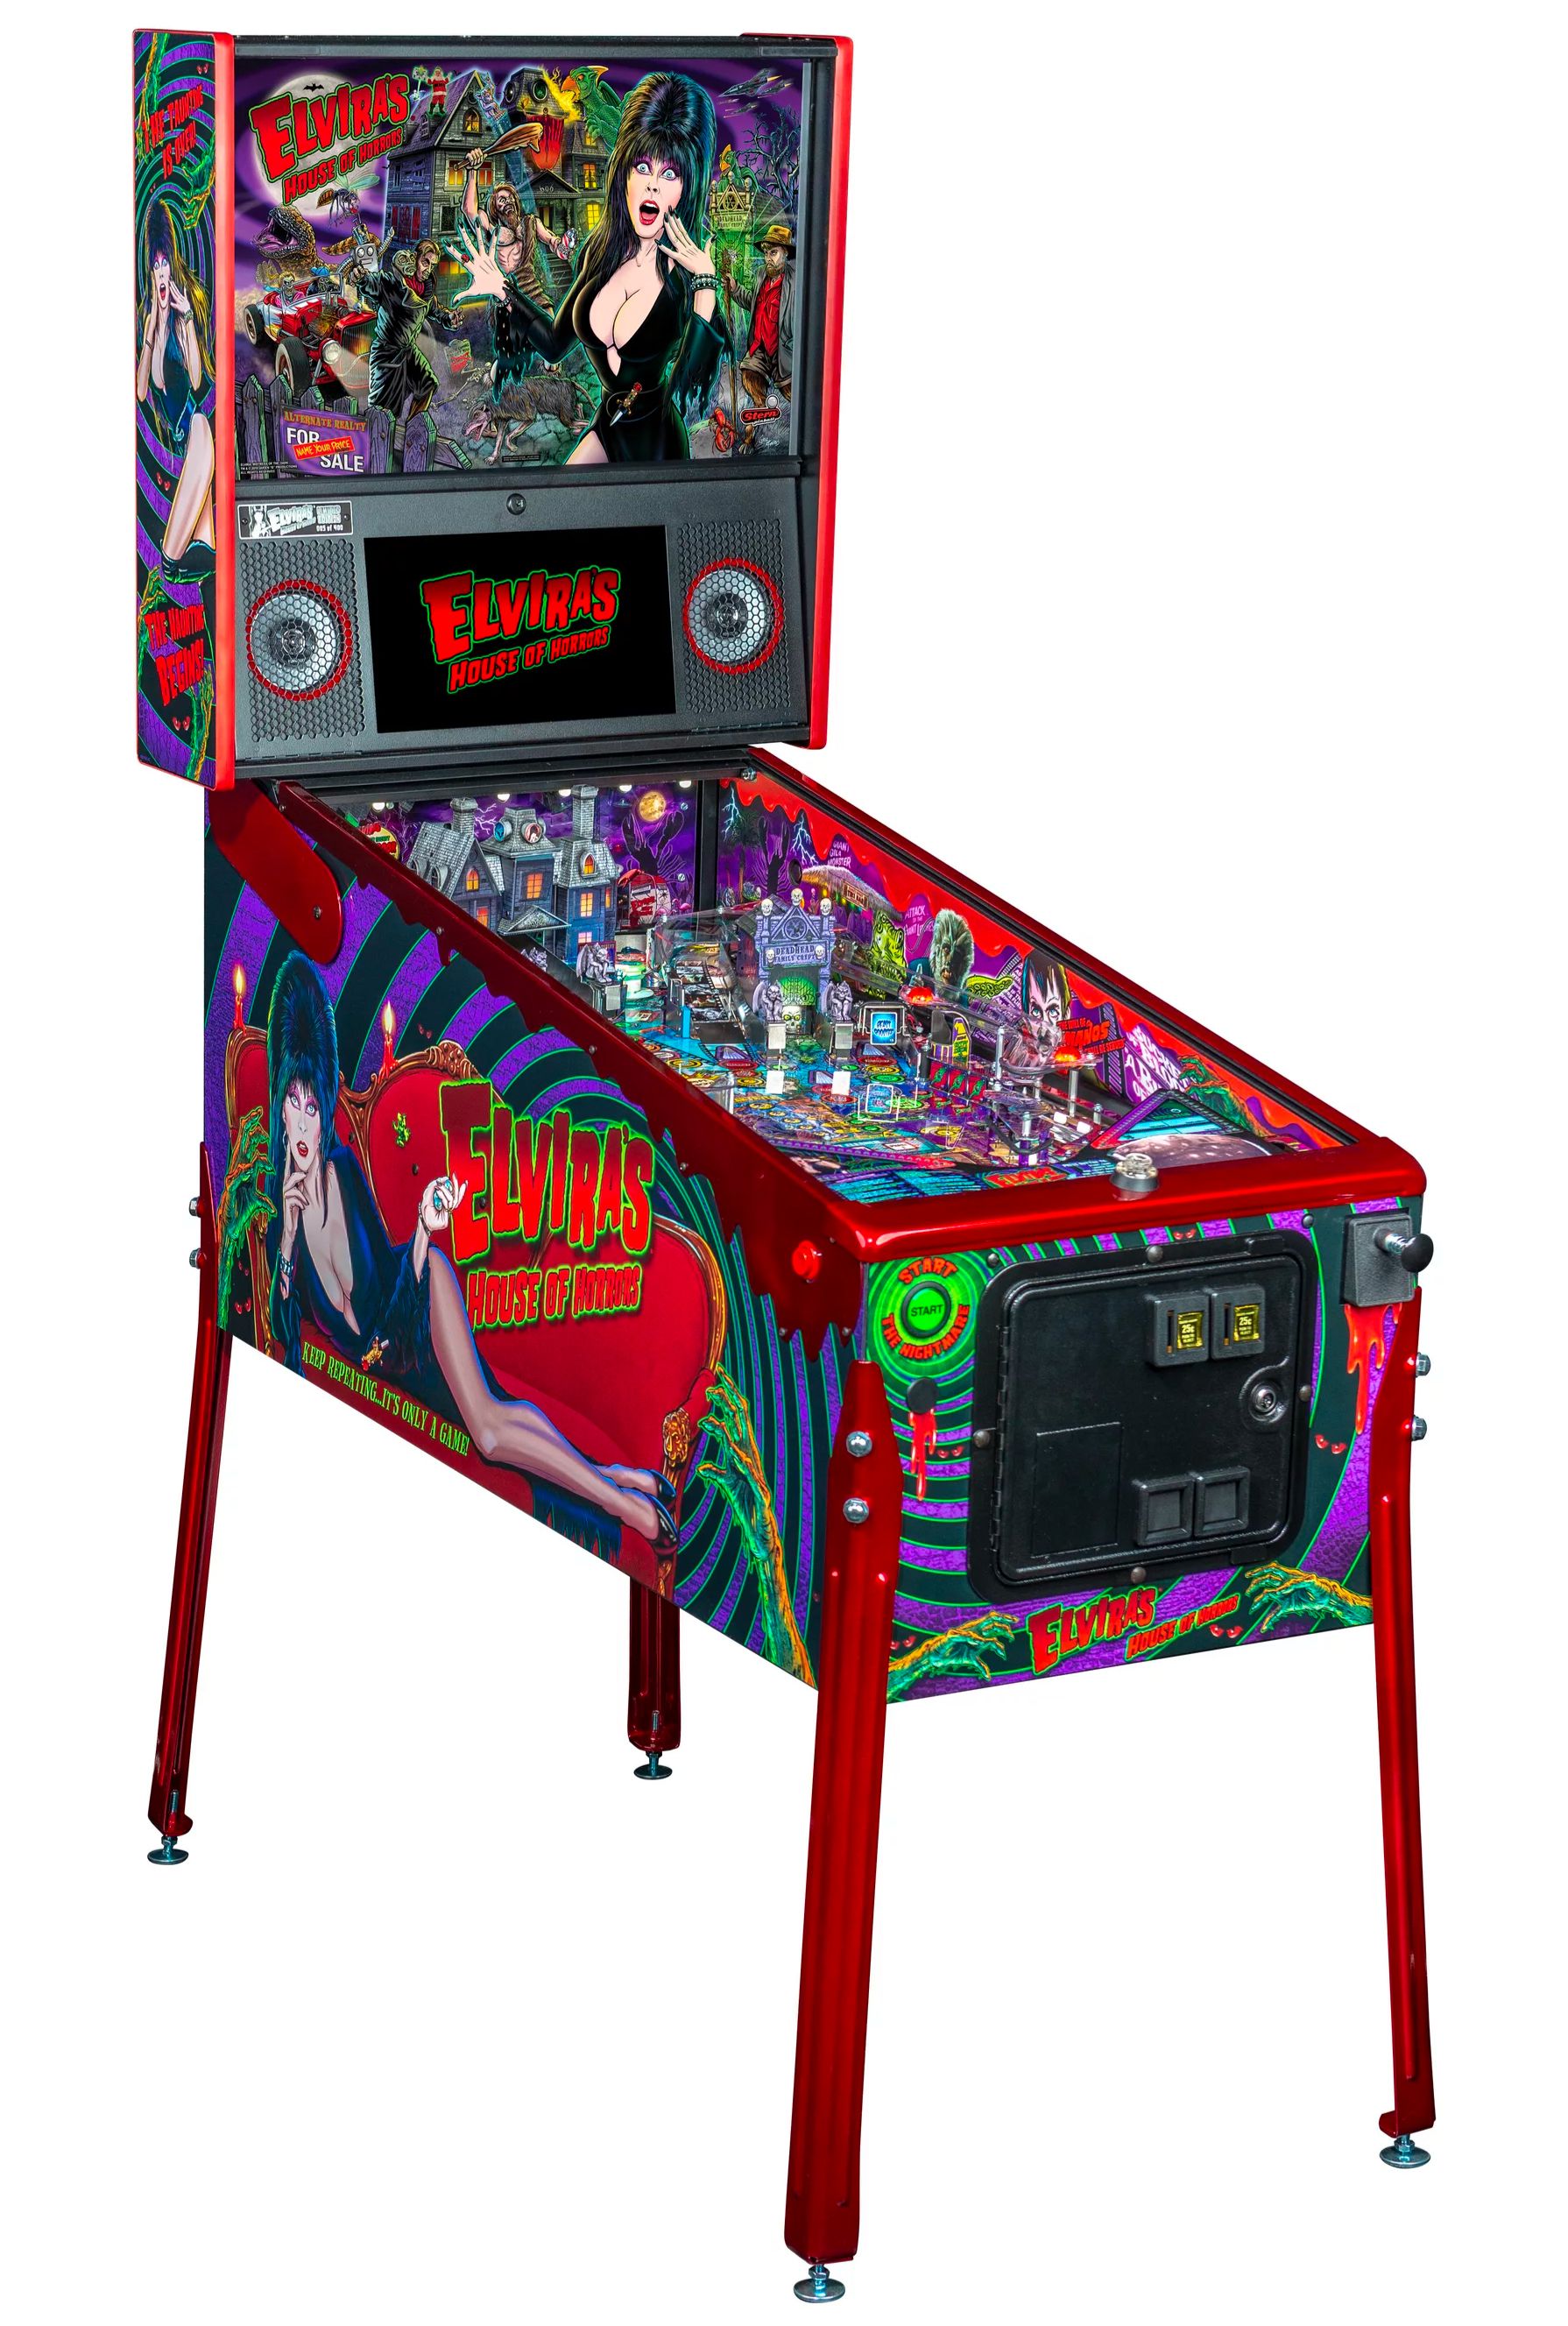 Elvira's House of Horrors Pinball machine by Stern #17